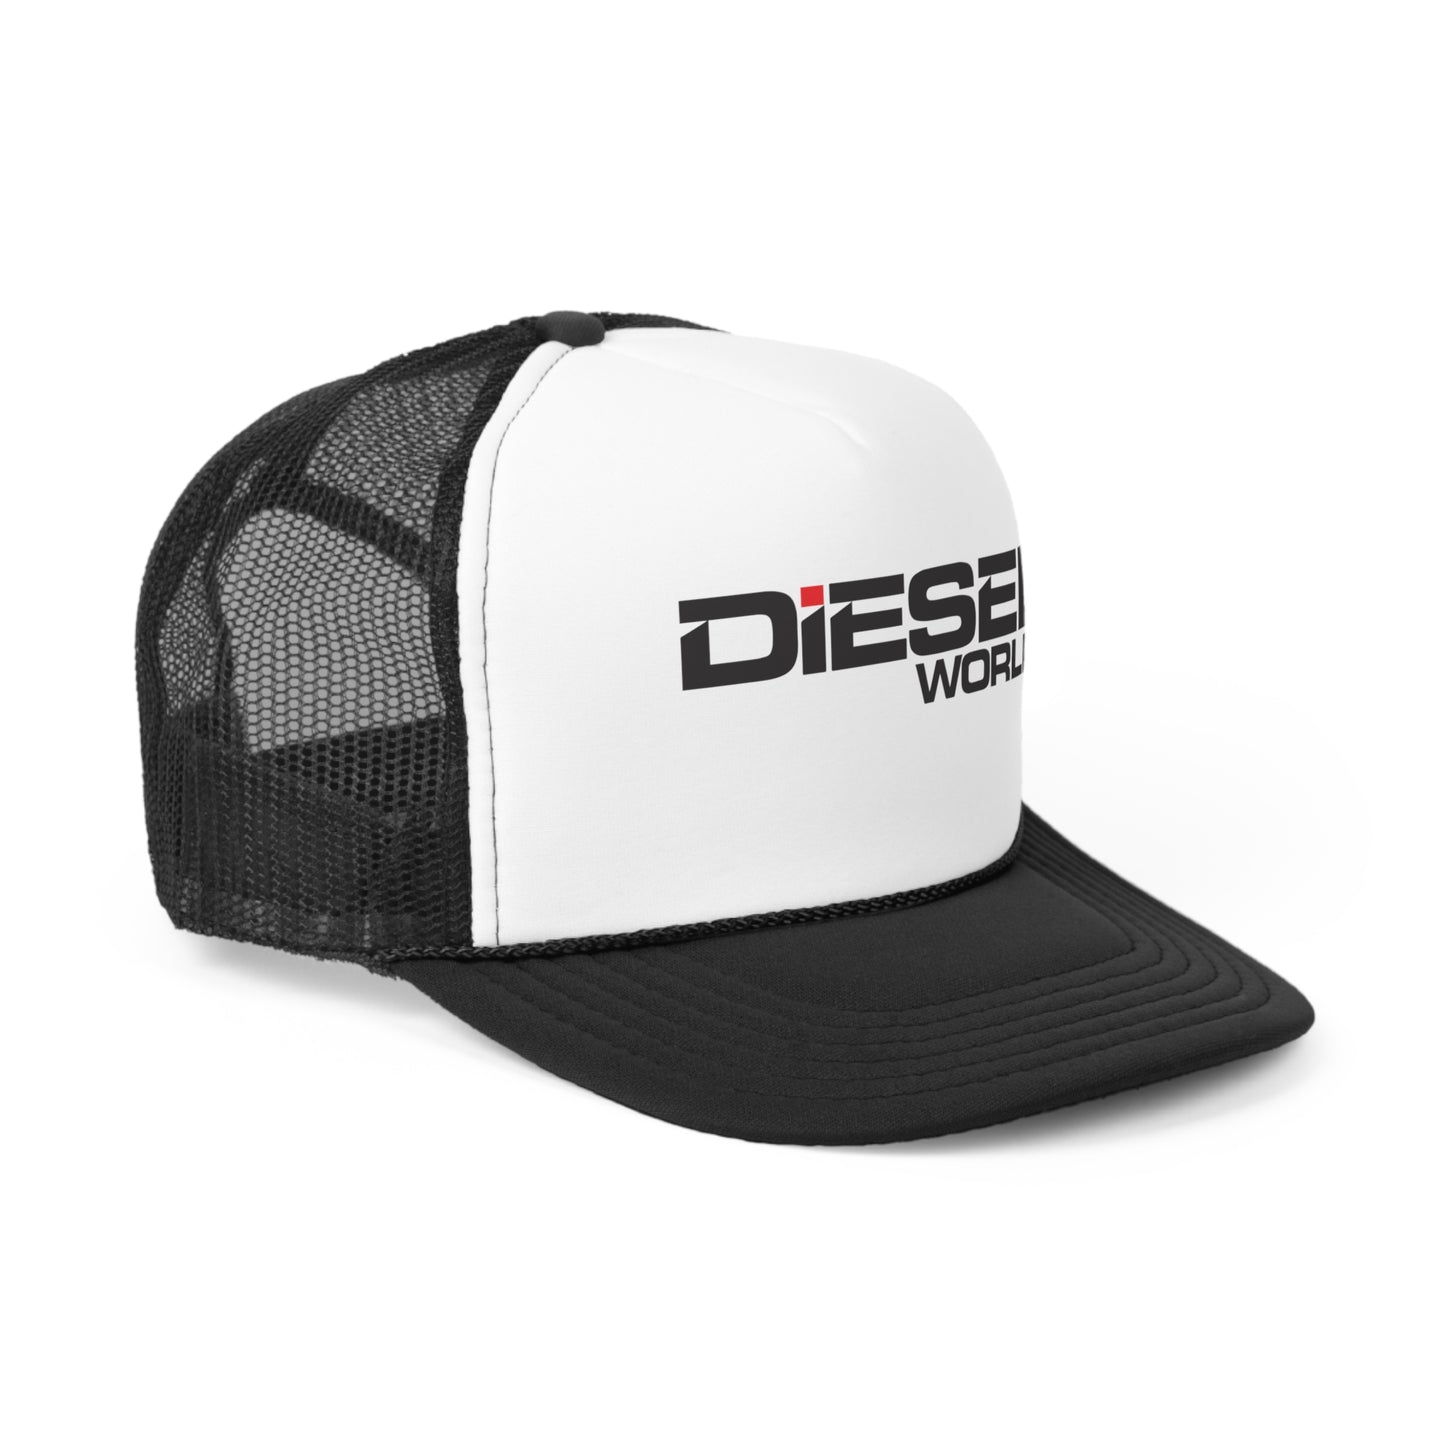 Diesel World - Trucker Caps